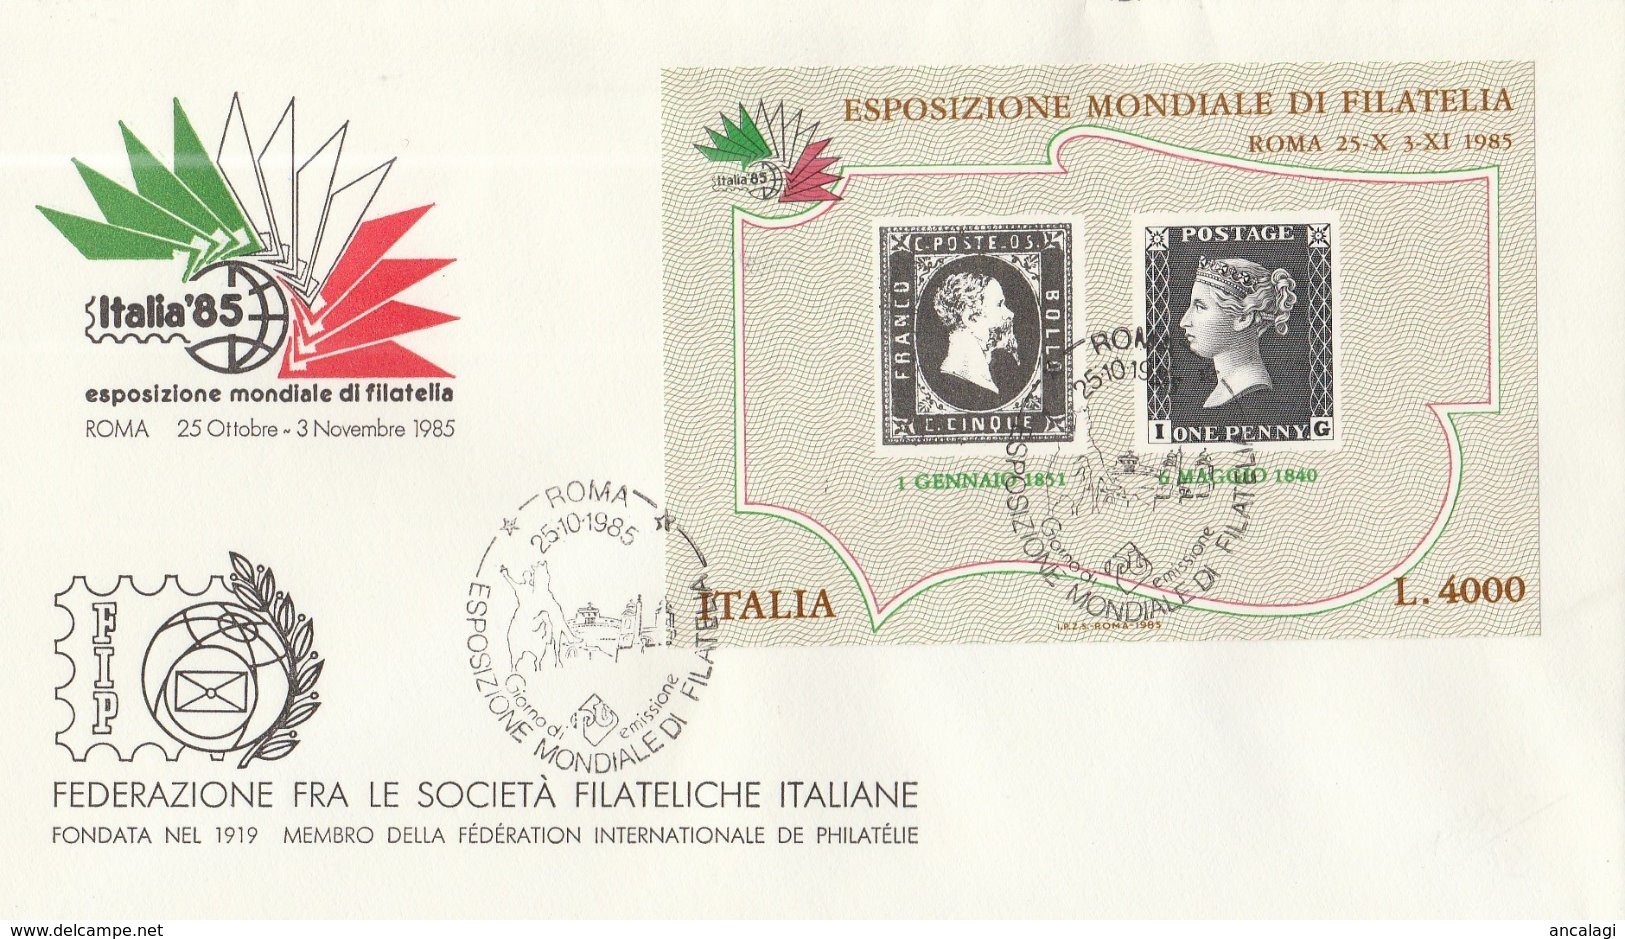 FR.NU.0588C - REPUBBLICA 1985 - "ESPOSIZIONE MONDIALE DI FILATELIA" Foglietto Da L.4000 Su Busta FDC - FDC